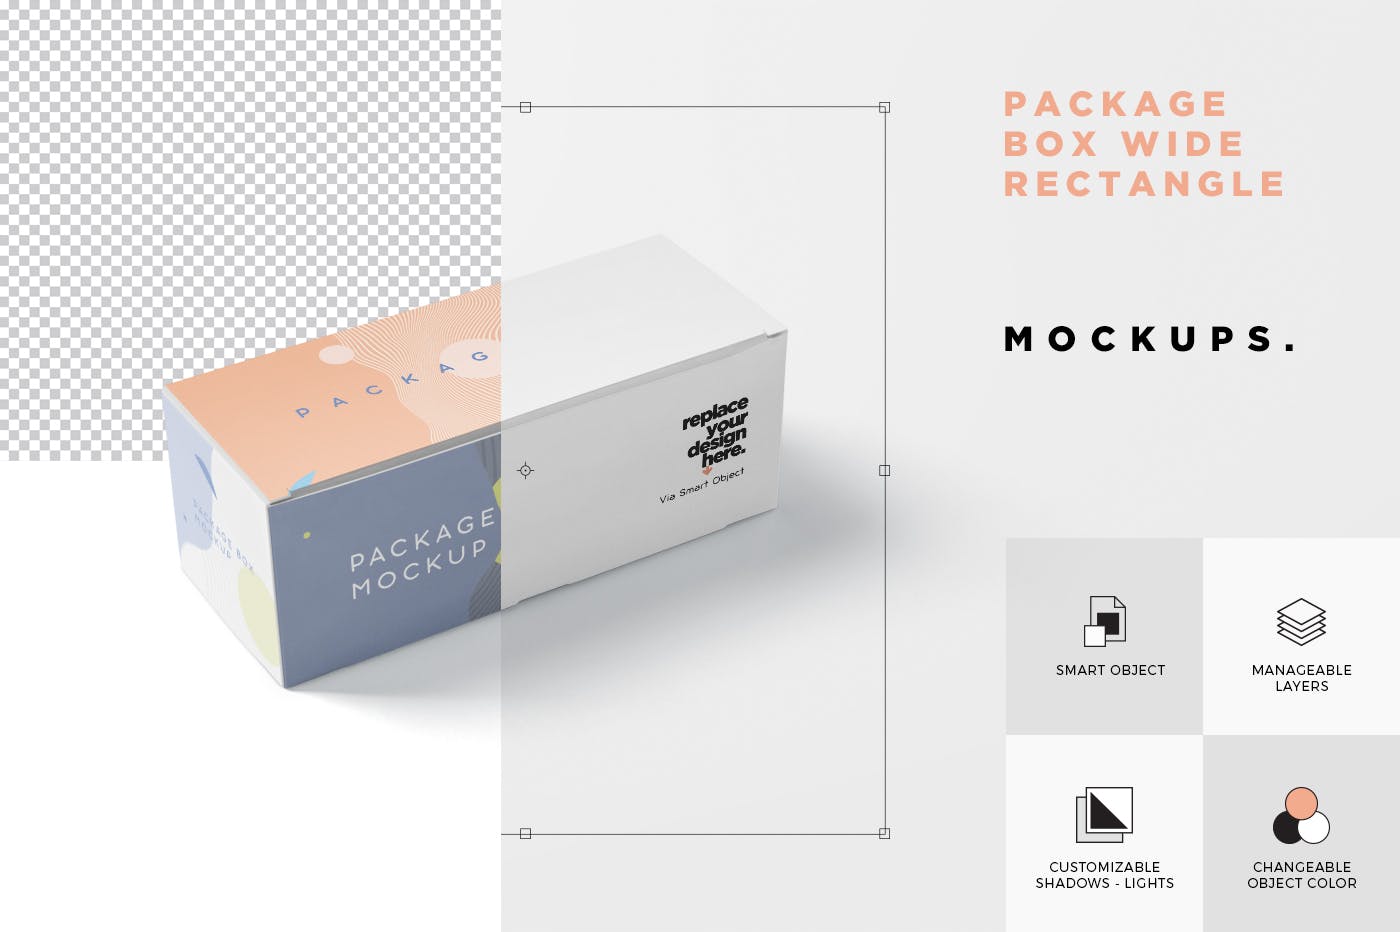 宽矩形包装盒外观设计效果图第一素材精选 Package Box Mock-Up Set – Wide Rectangle插图(6)